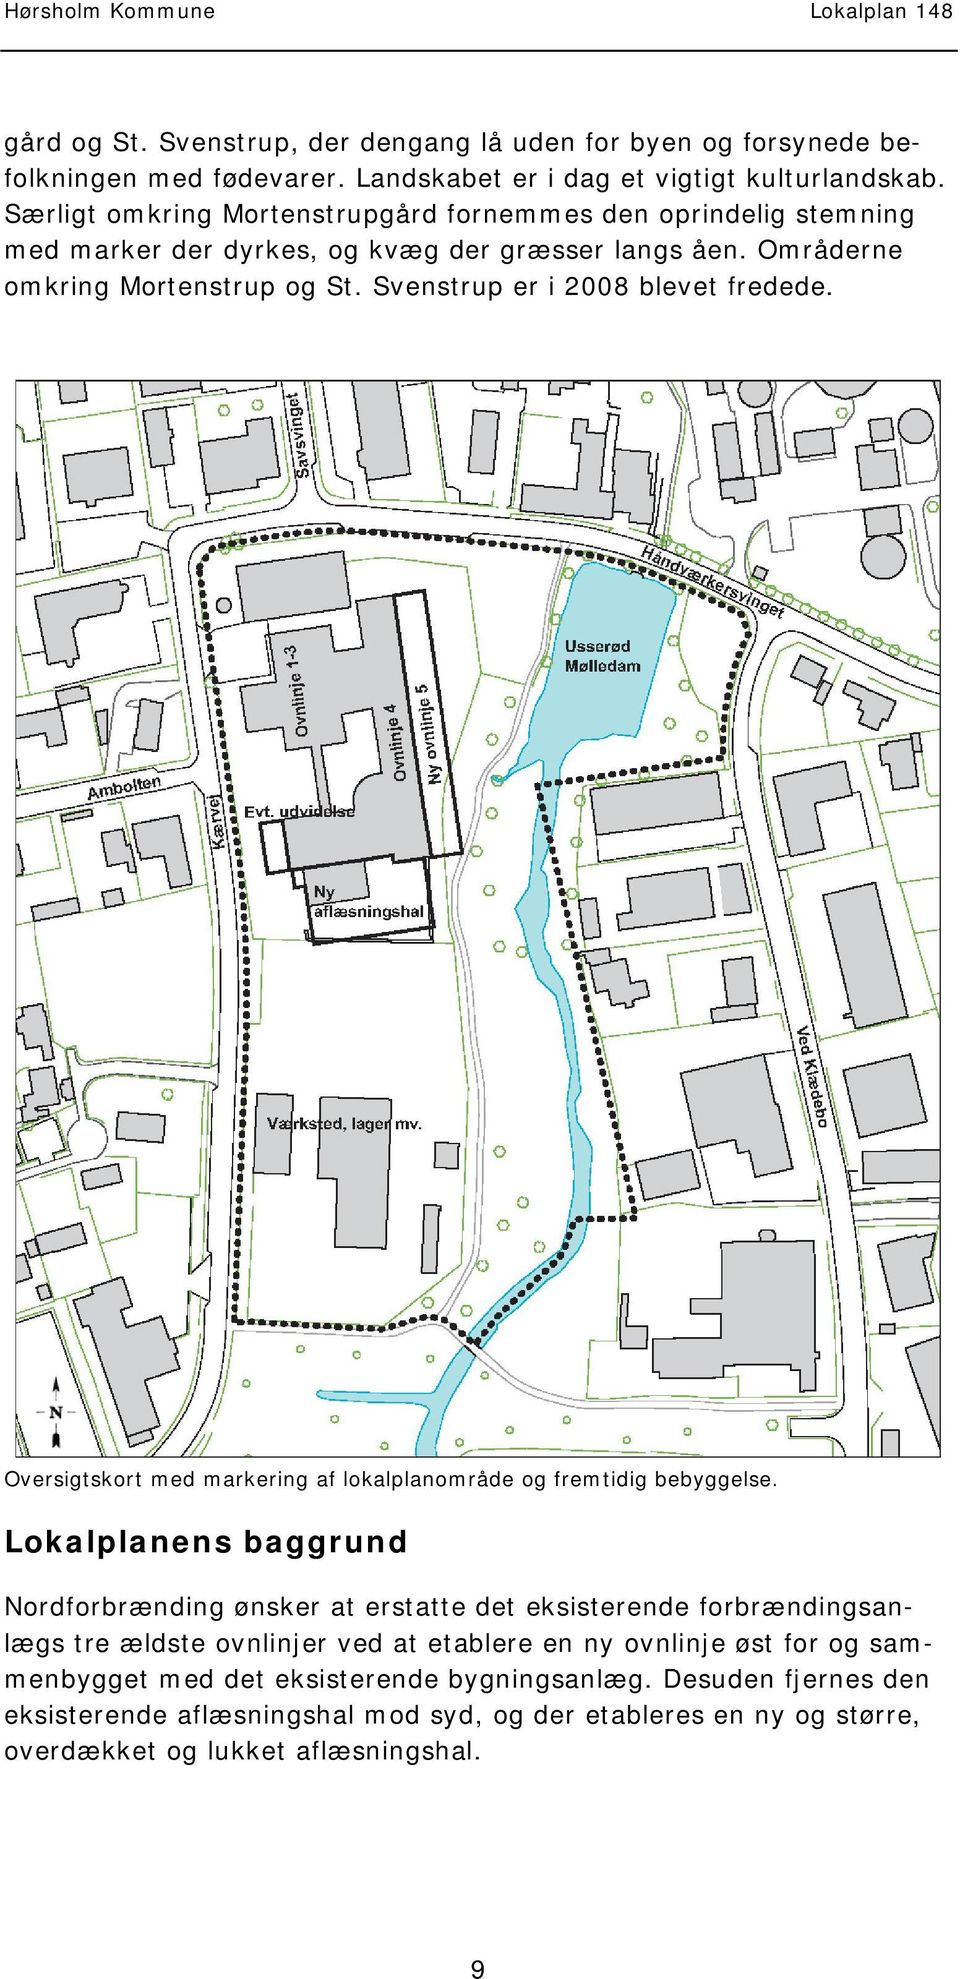 Oversigtskort med markering af lokalplanområde og fremtidig bebyggelse.